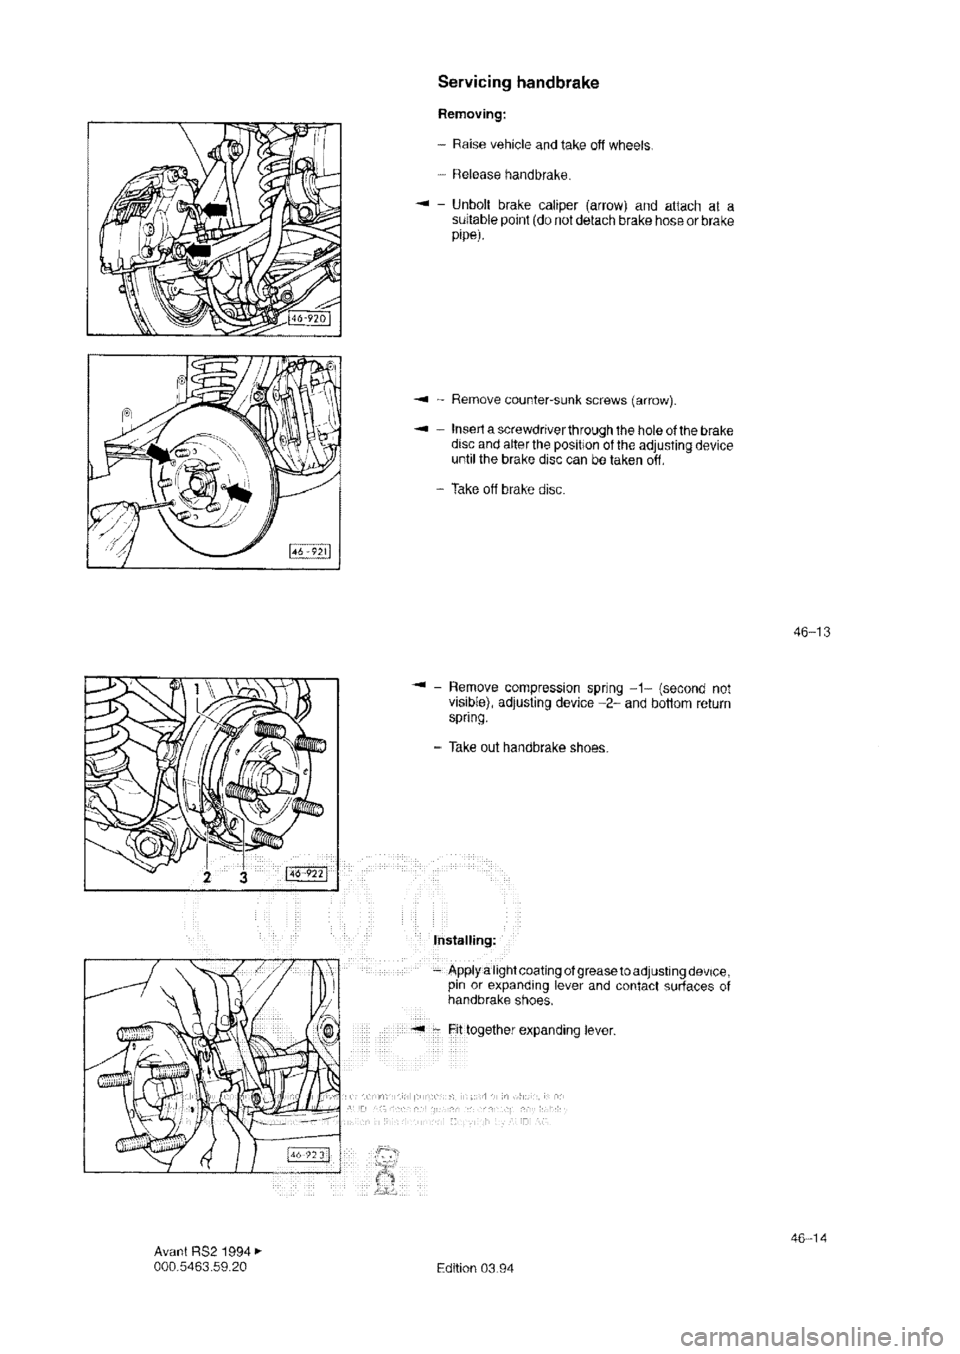 AUDI RS2 1994 Manual PDF 